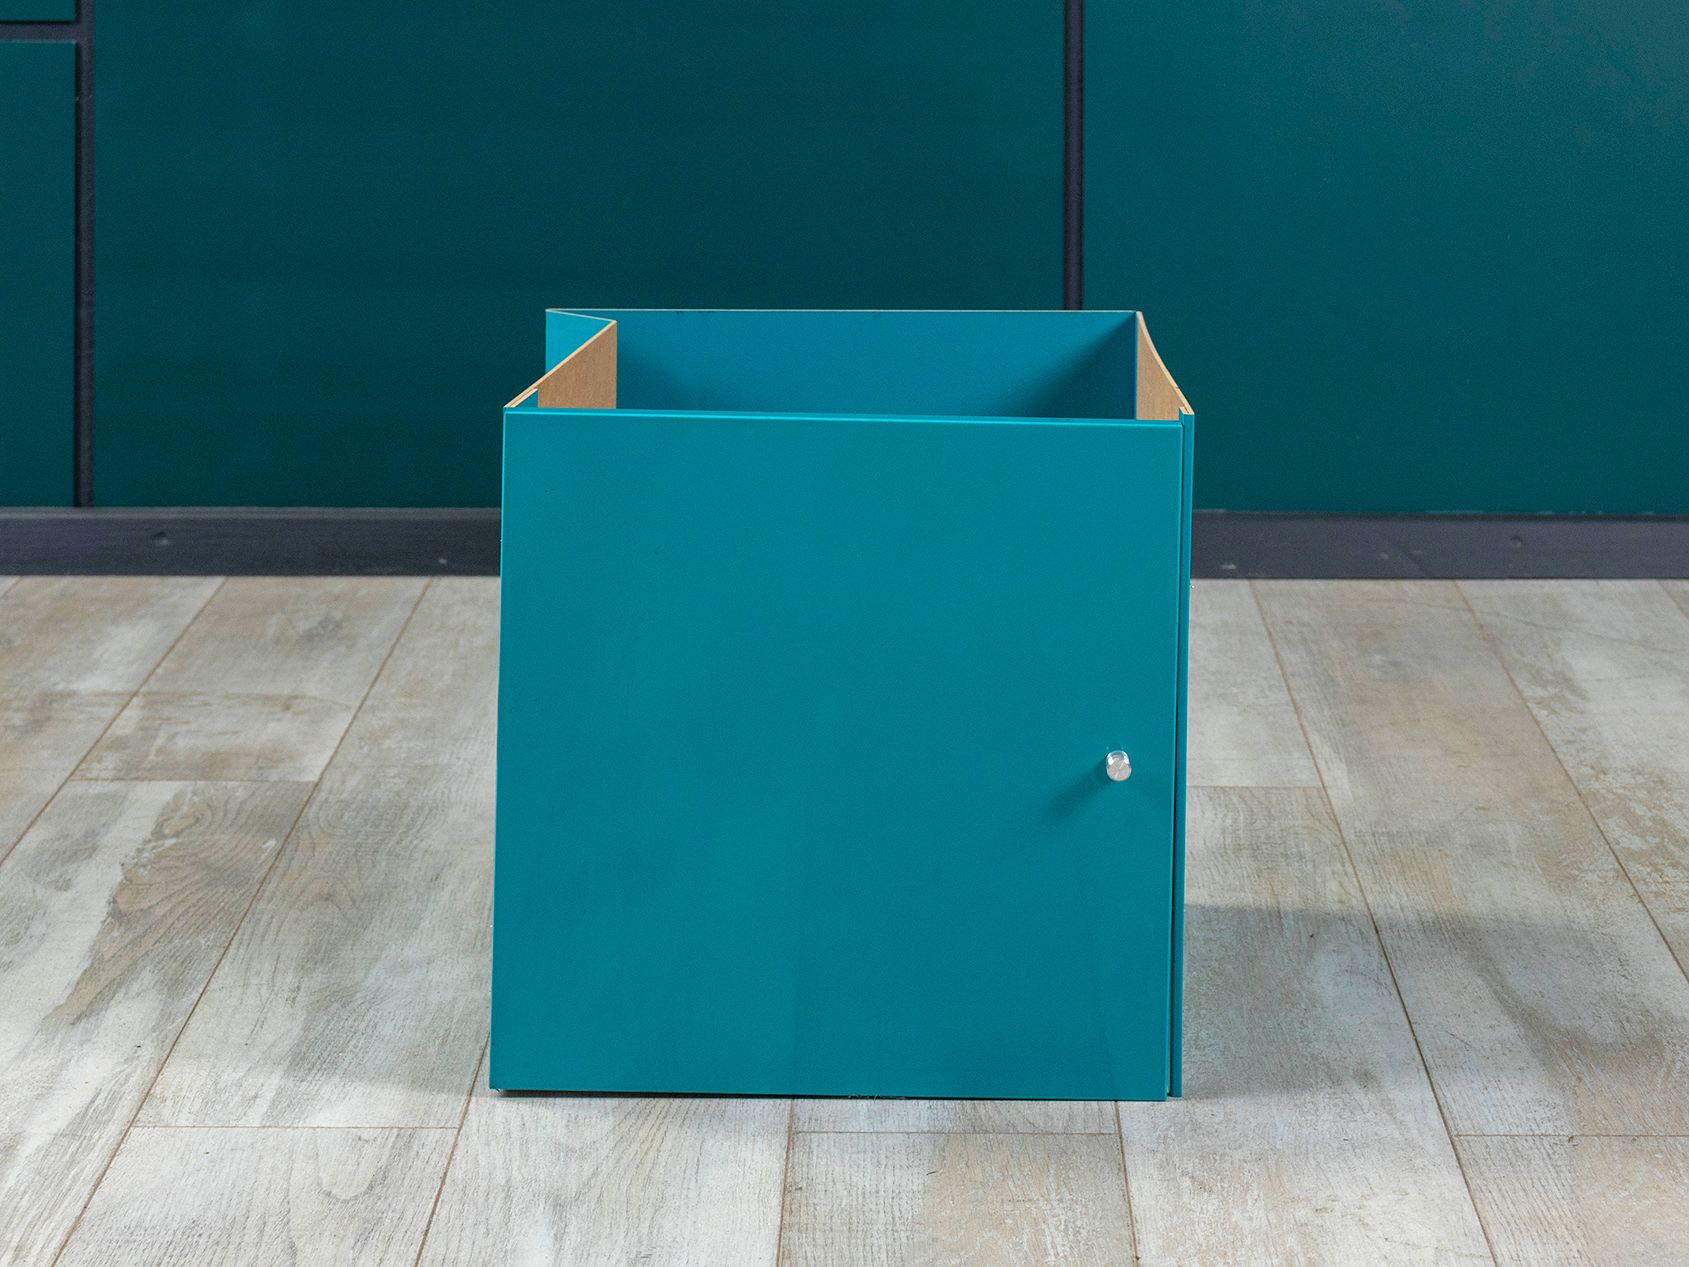 Ящик для стеллажа IKEA ДСП Синий Швеция_ЯЩИК2-25050